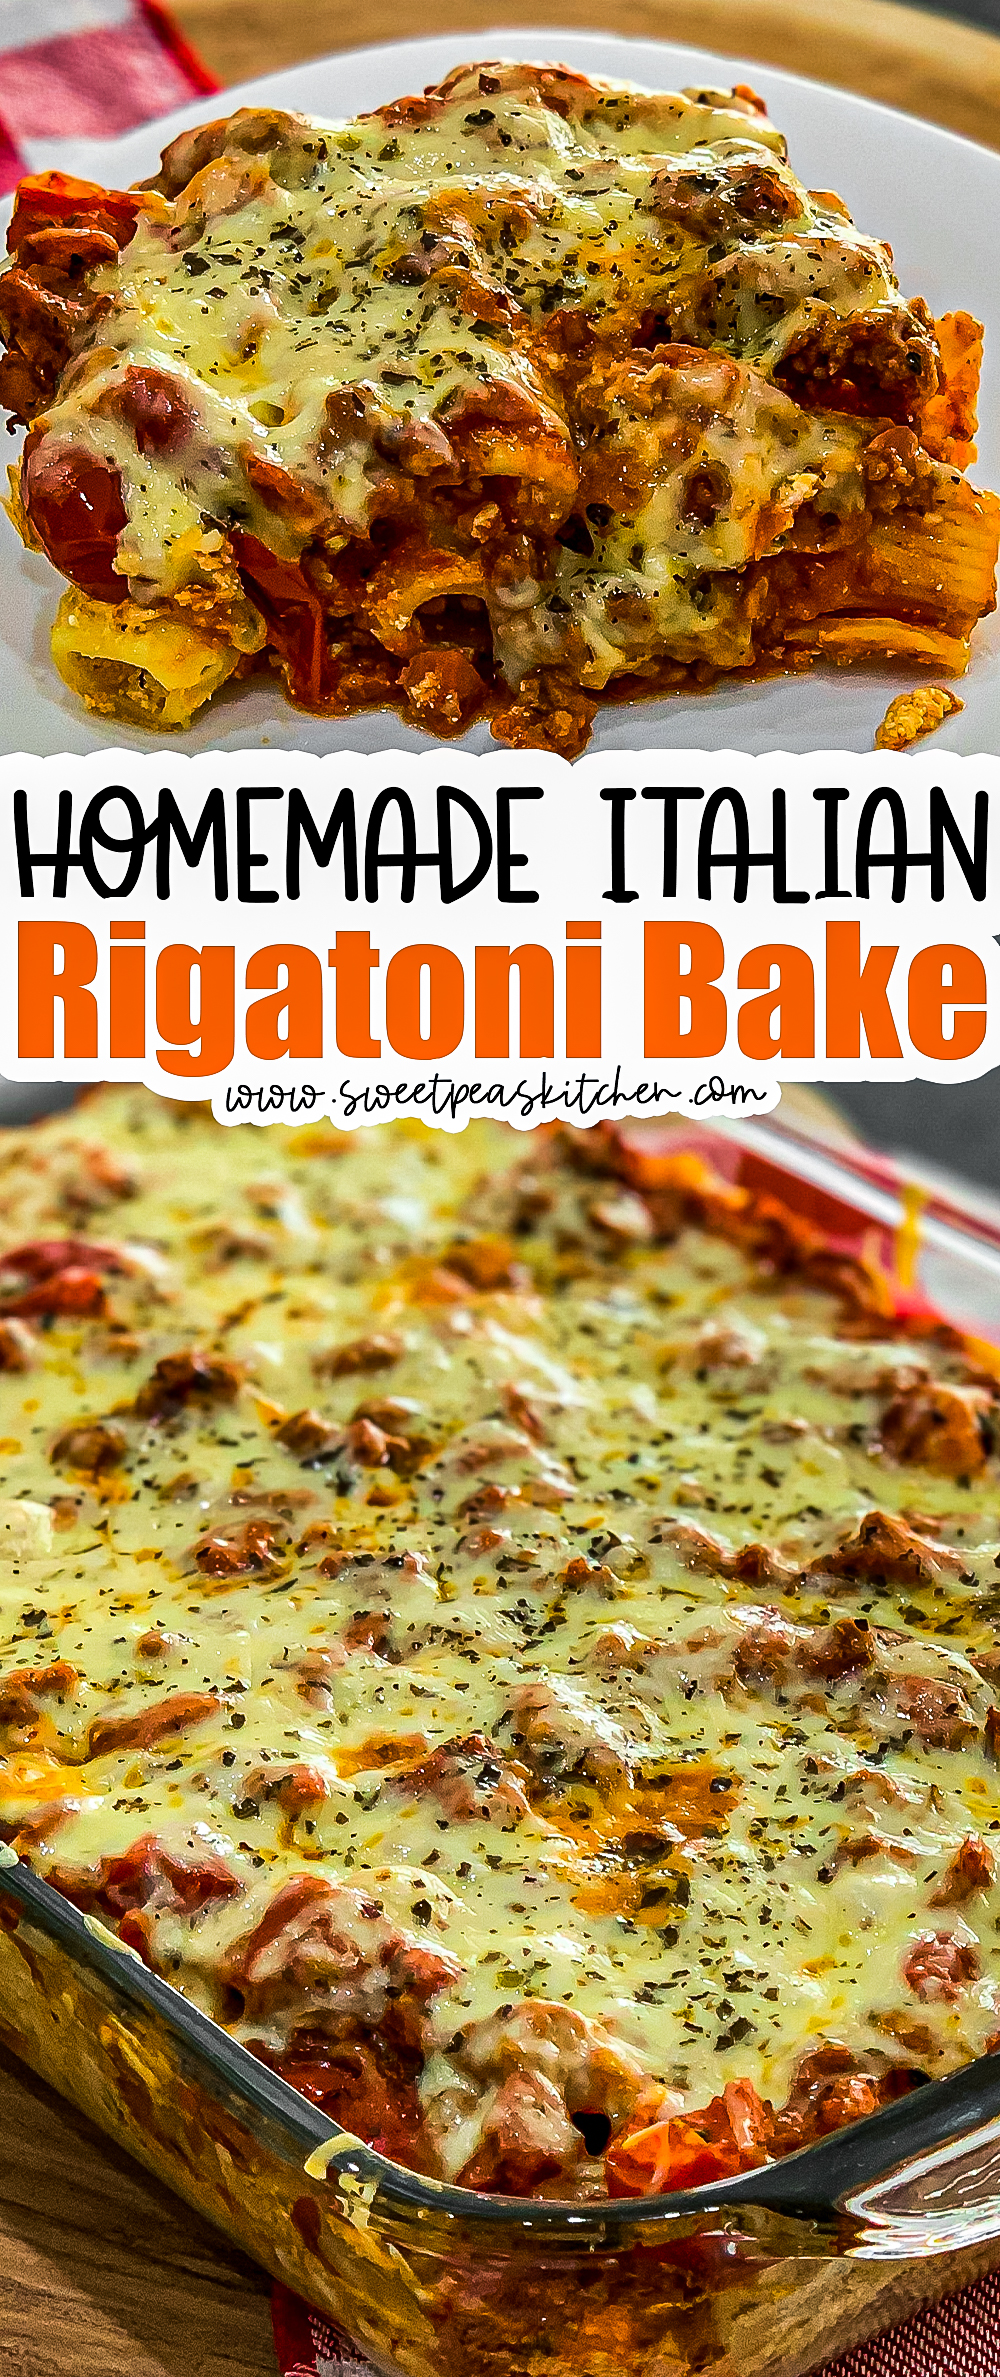 Italian Rigatoni Bake on Pinterest